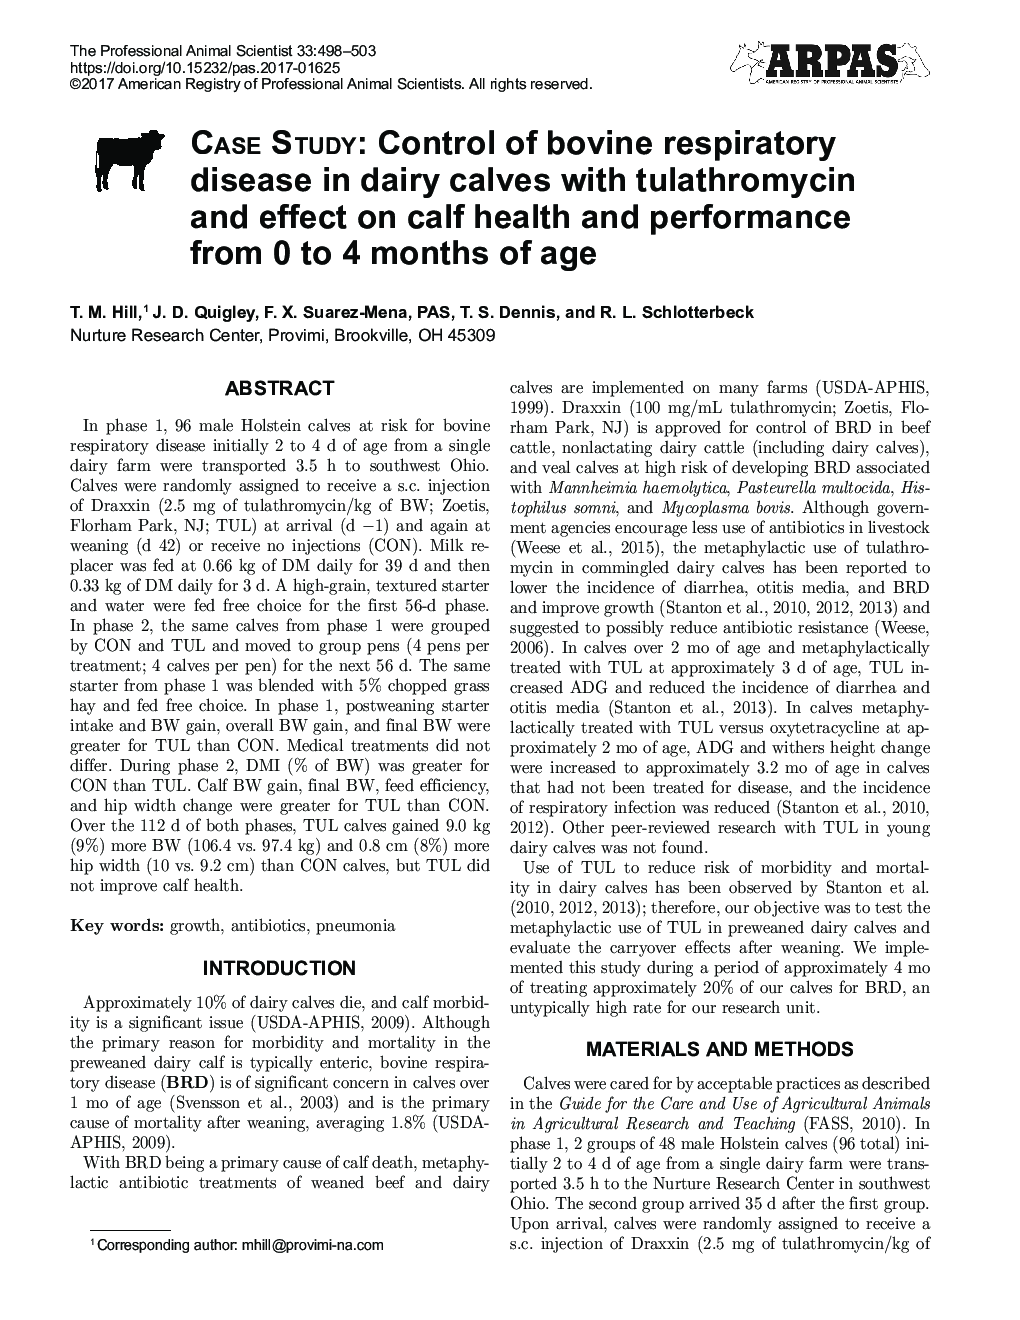 مطالعه موردی: کنترل بیماری تنفسی گاو در گوساله های شیری با تولاترومایسین و تأثیر آن بر سلامتی و عملکرد گوساله ها از 0 تا 4 ماهگی 